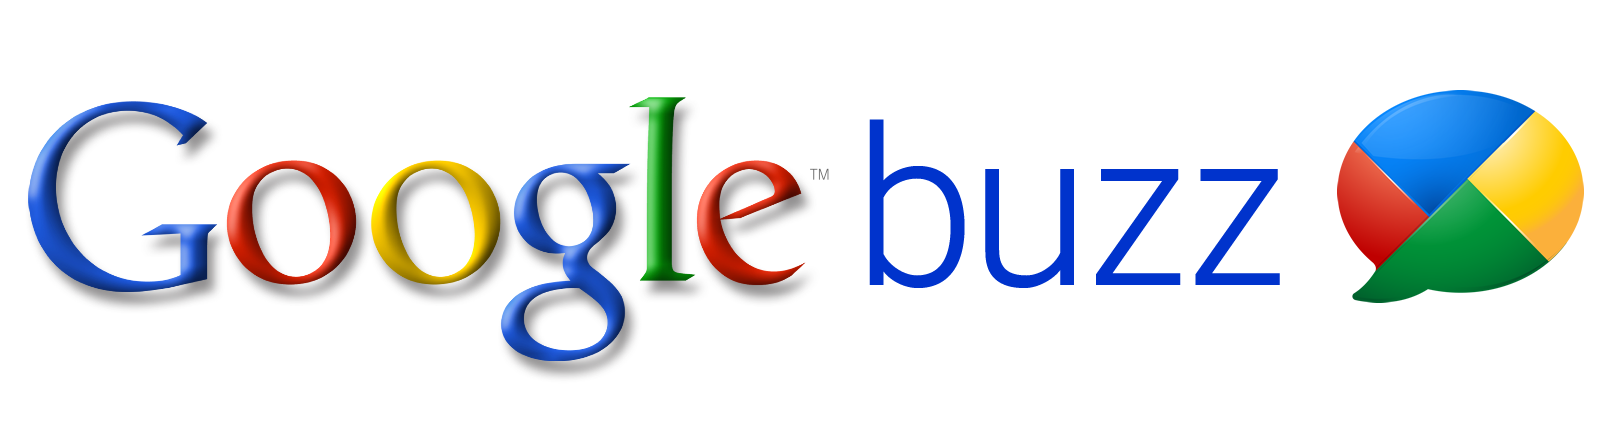 Buzz'ın fişini çeken Google bundan böyle Google+'ya daha fazla odaklanacak